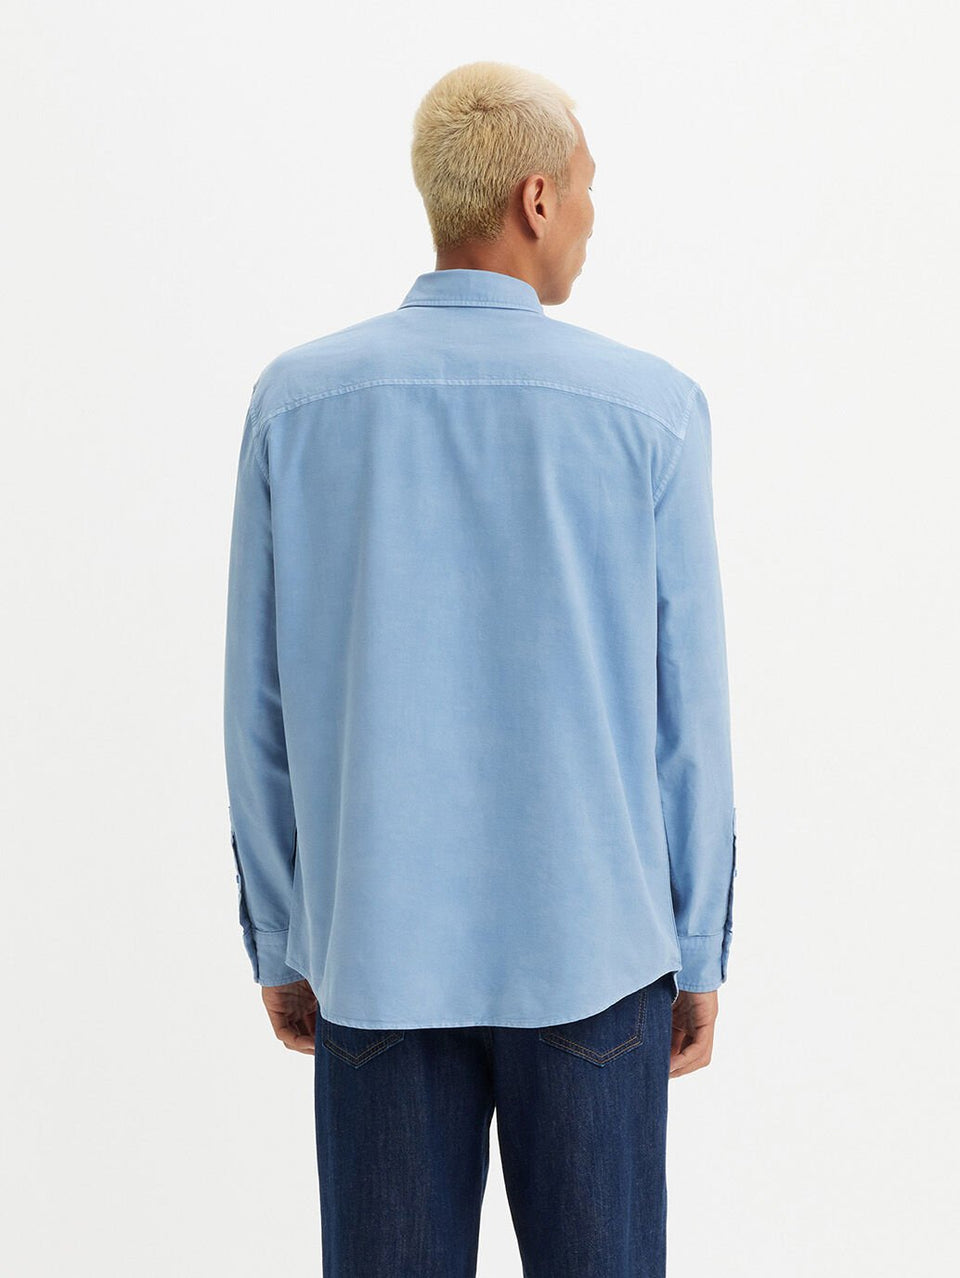 Levis Men's Authentic Button Down Shirt Allure Garment Dyed